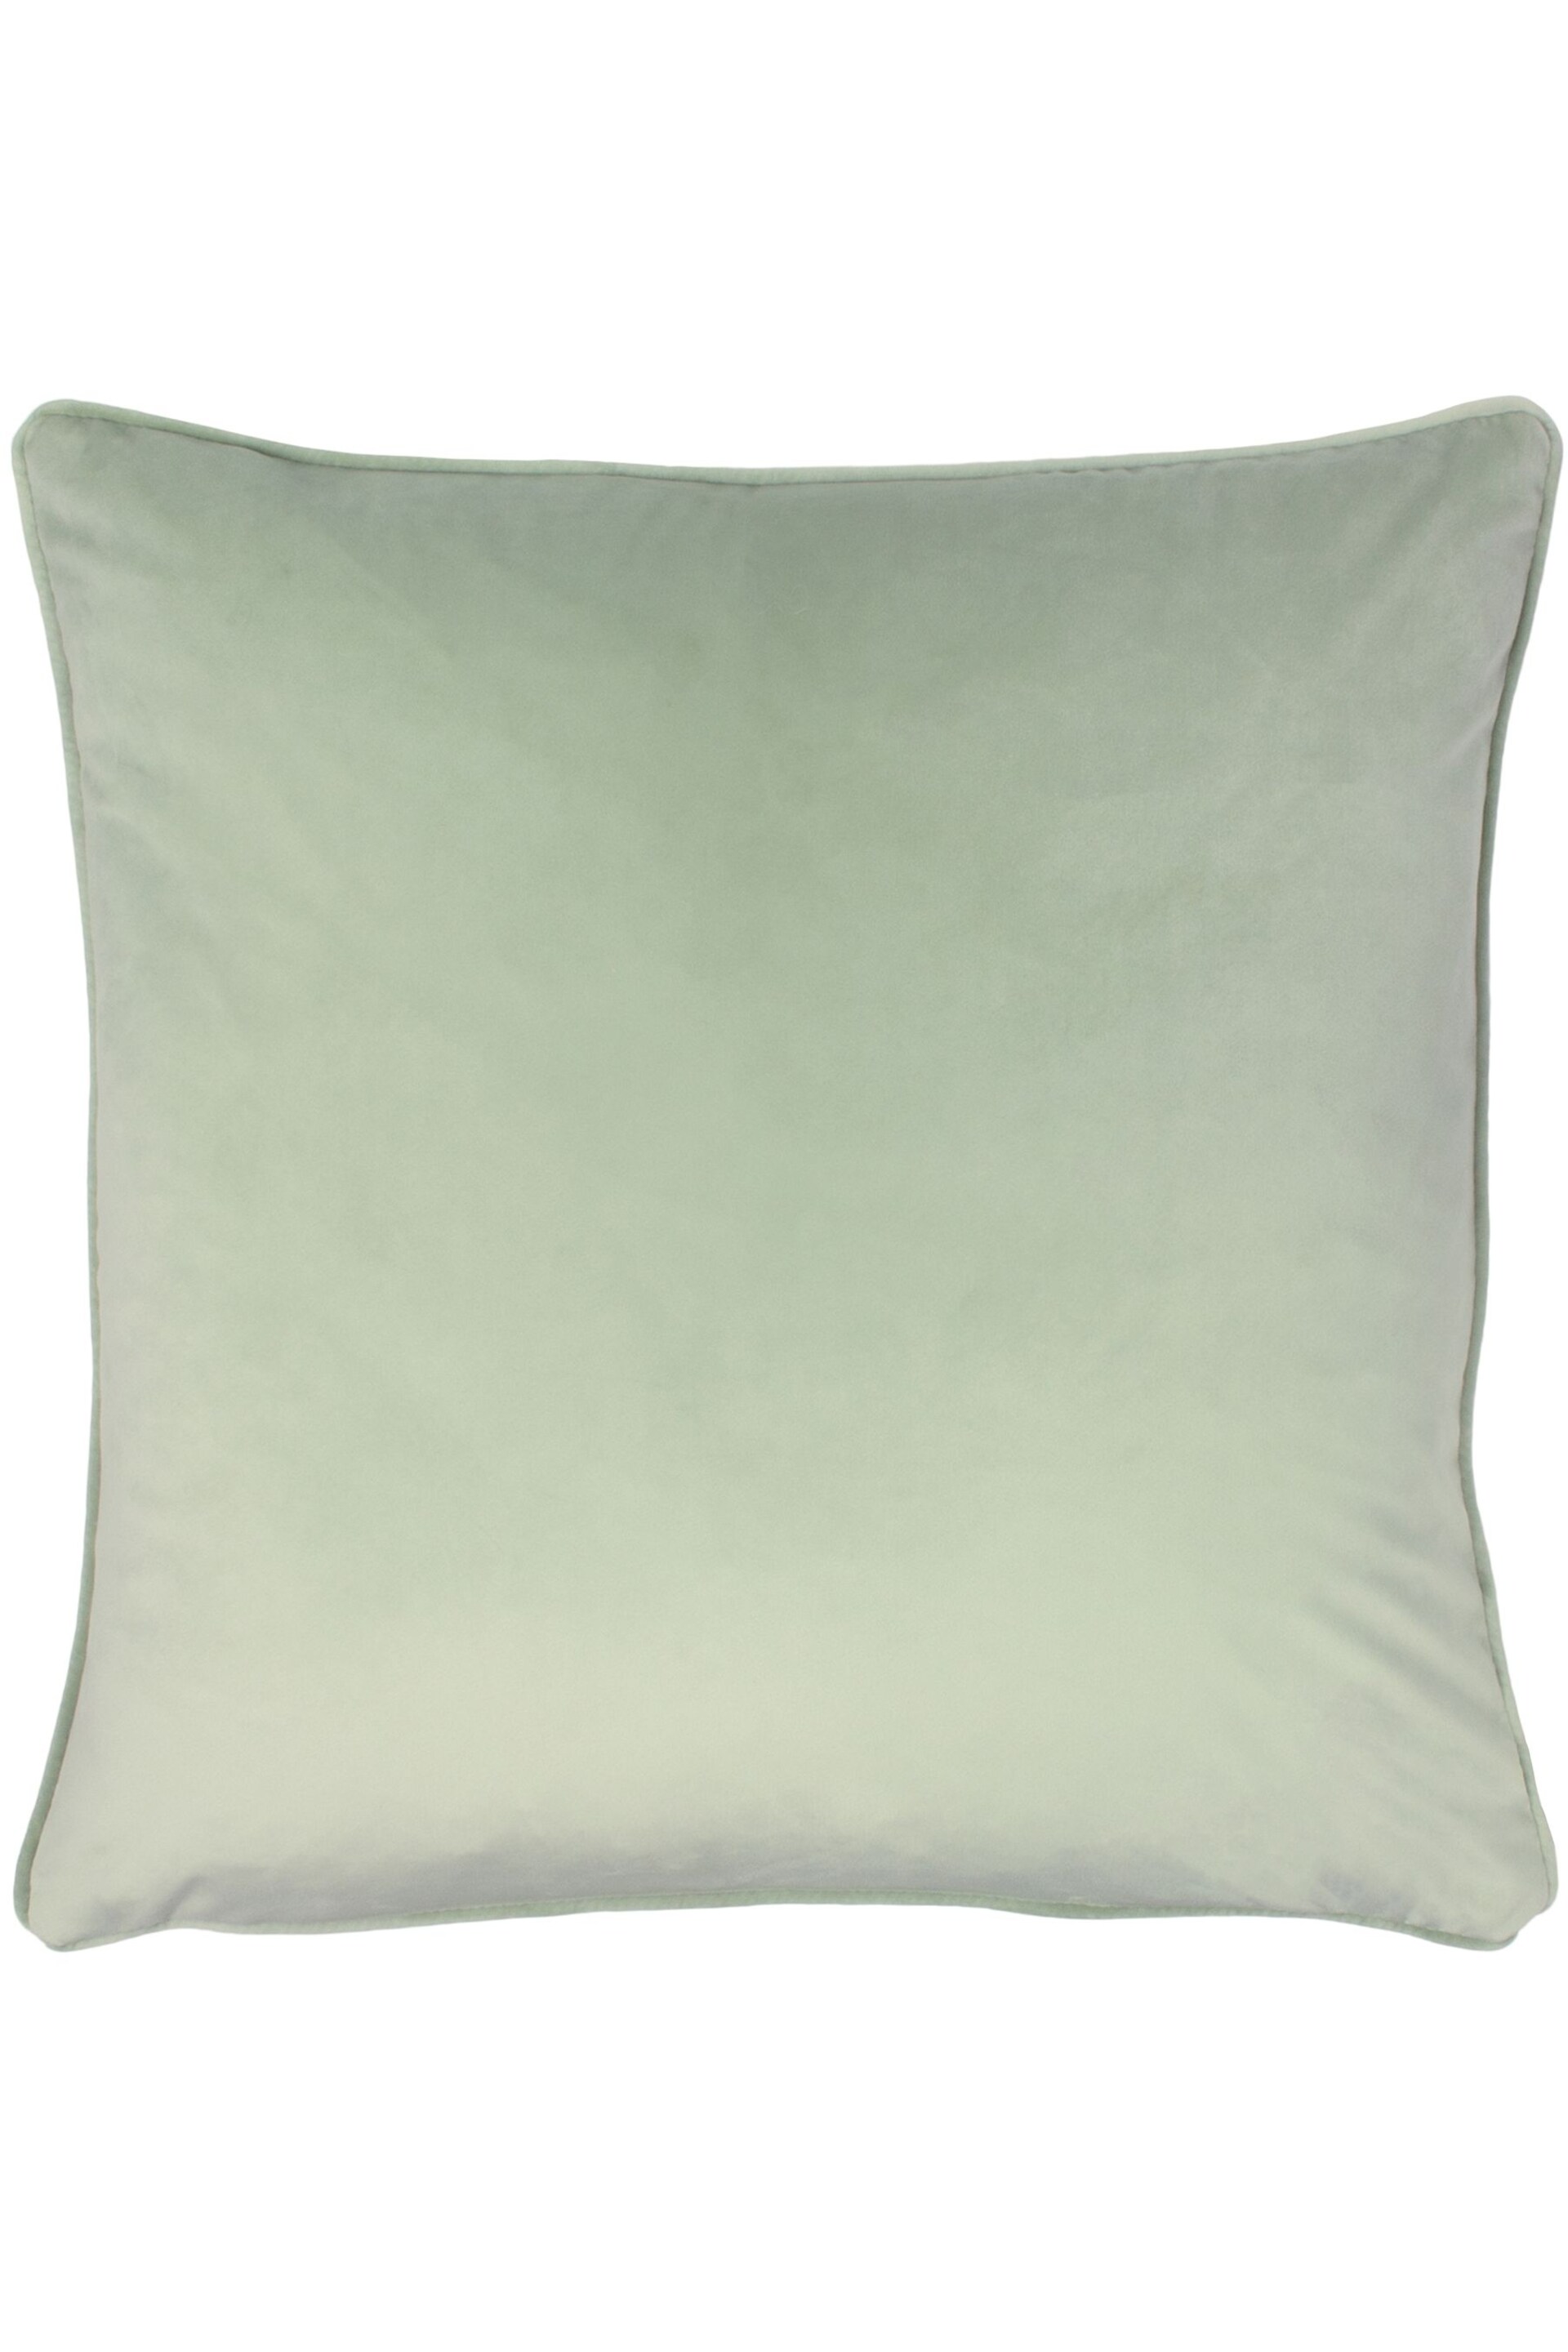 Evans Lichfield Green Opulence Velvet Polyester Filled Cushion - Image 1 of 3